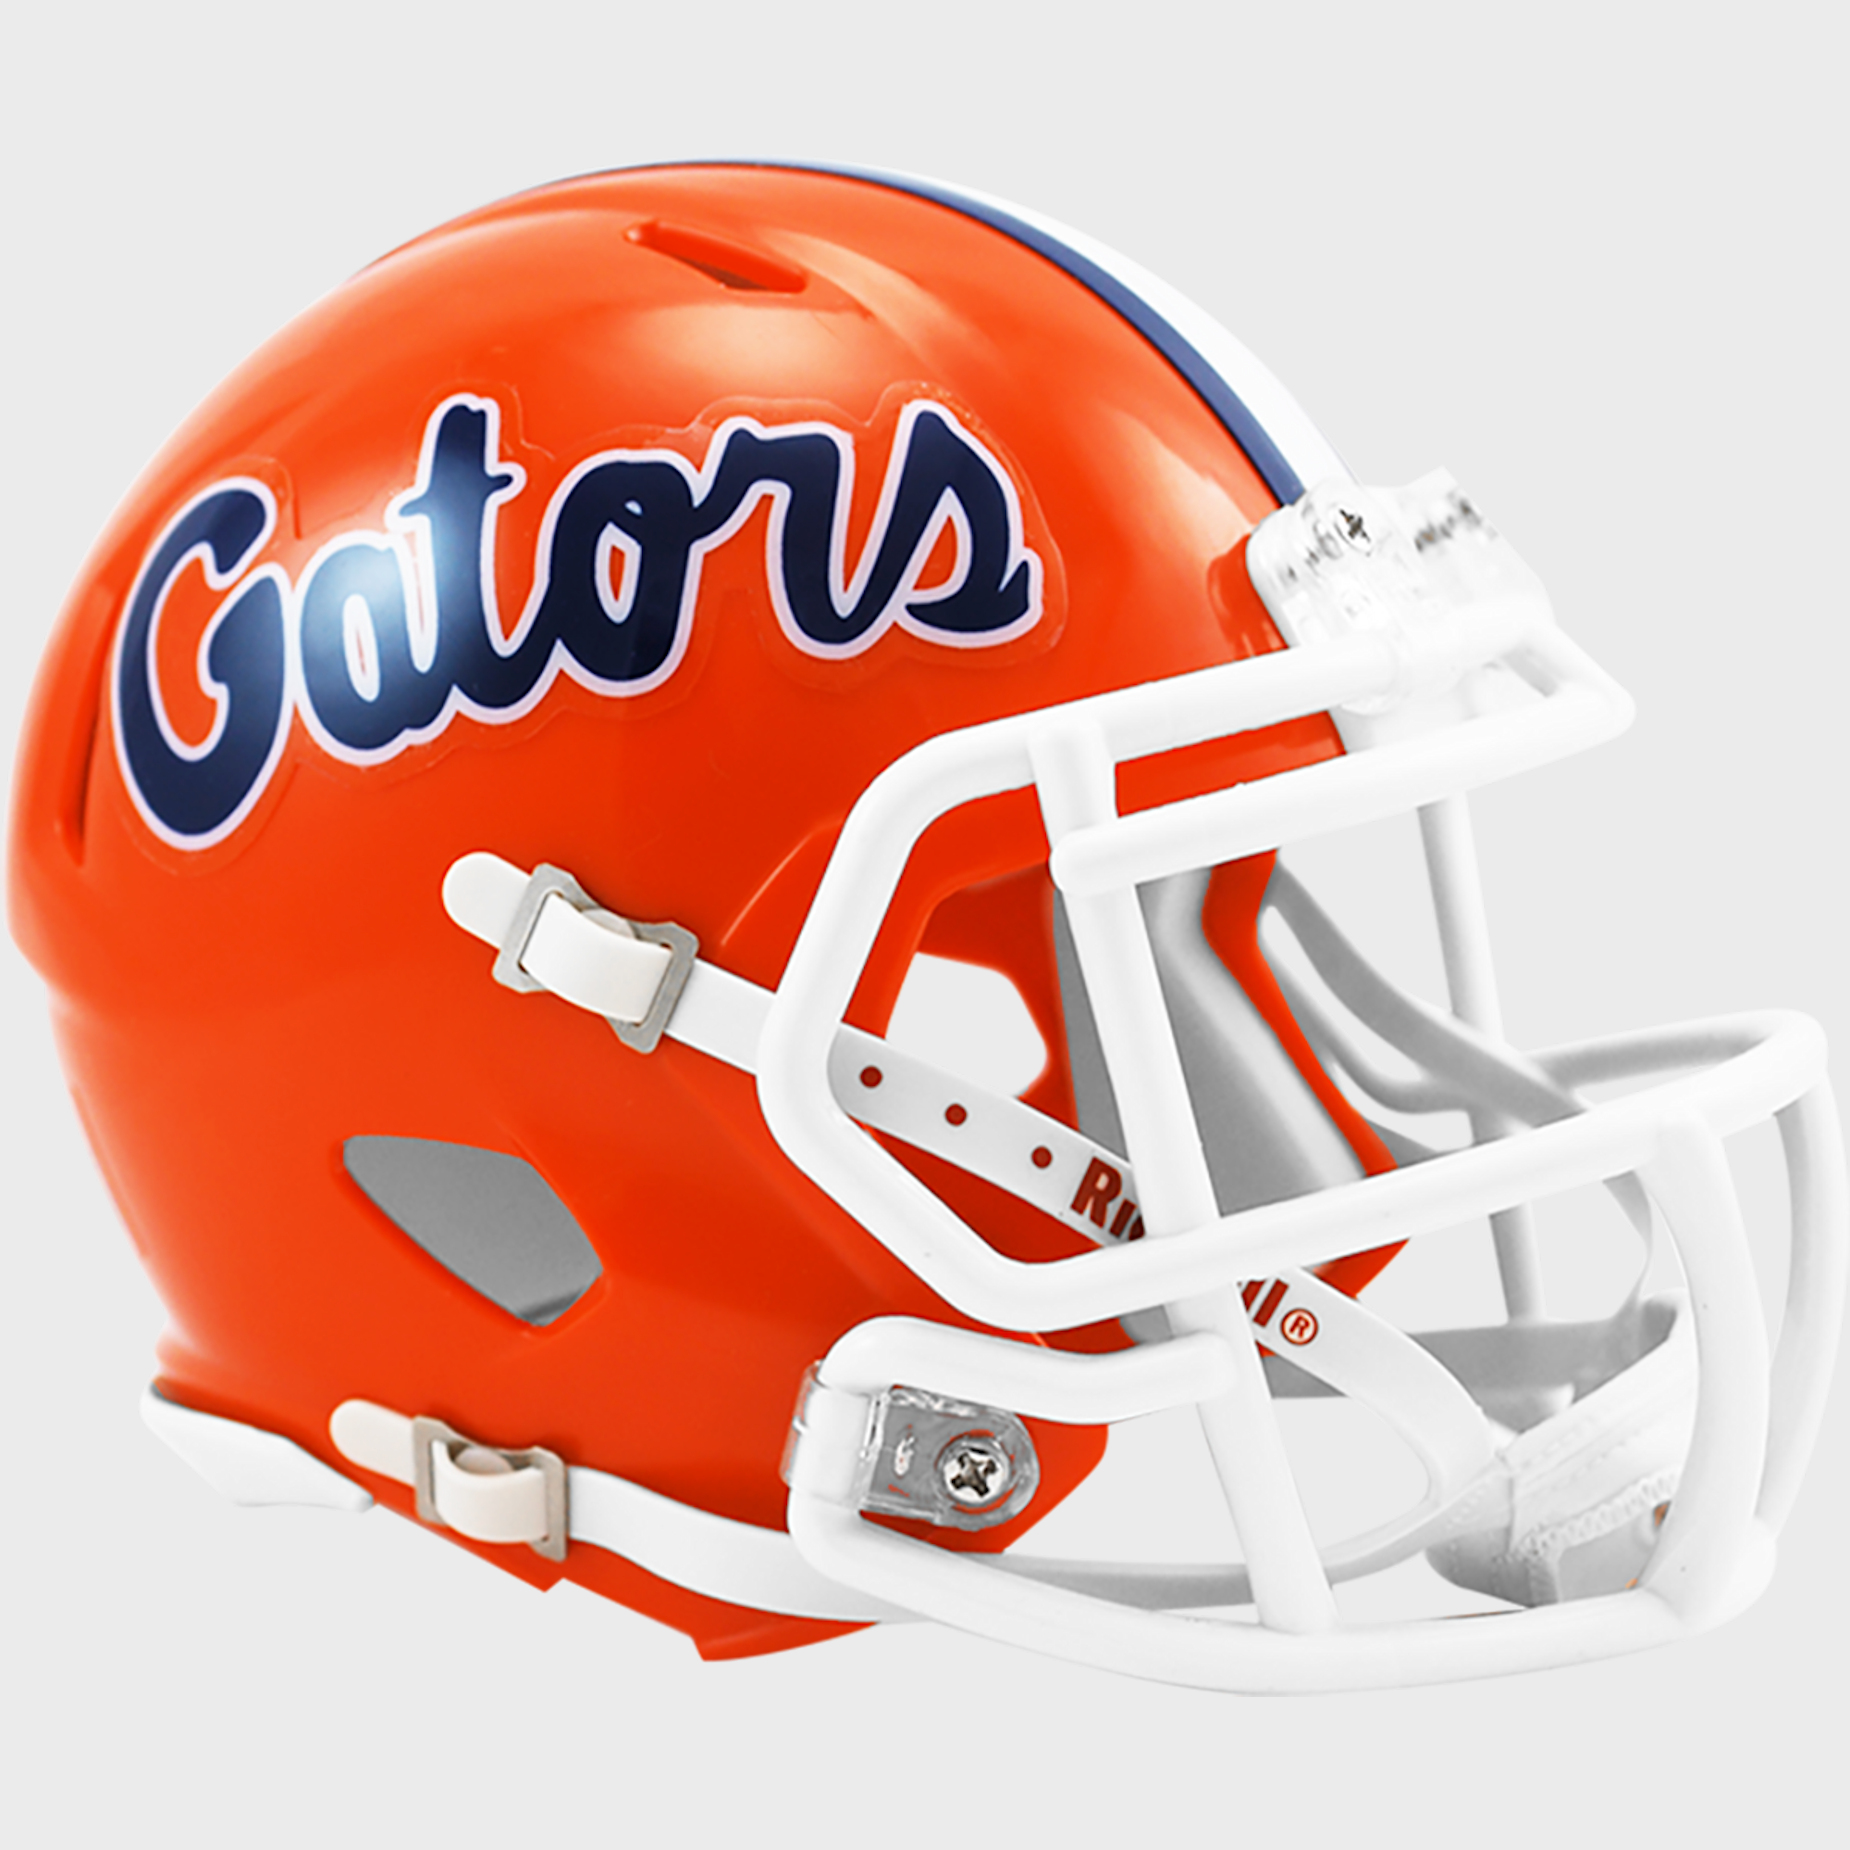 Florida Gators NCAA Mini Speed Football Helmet